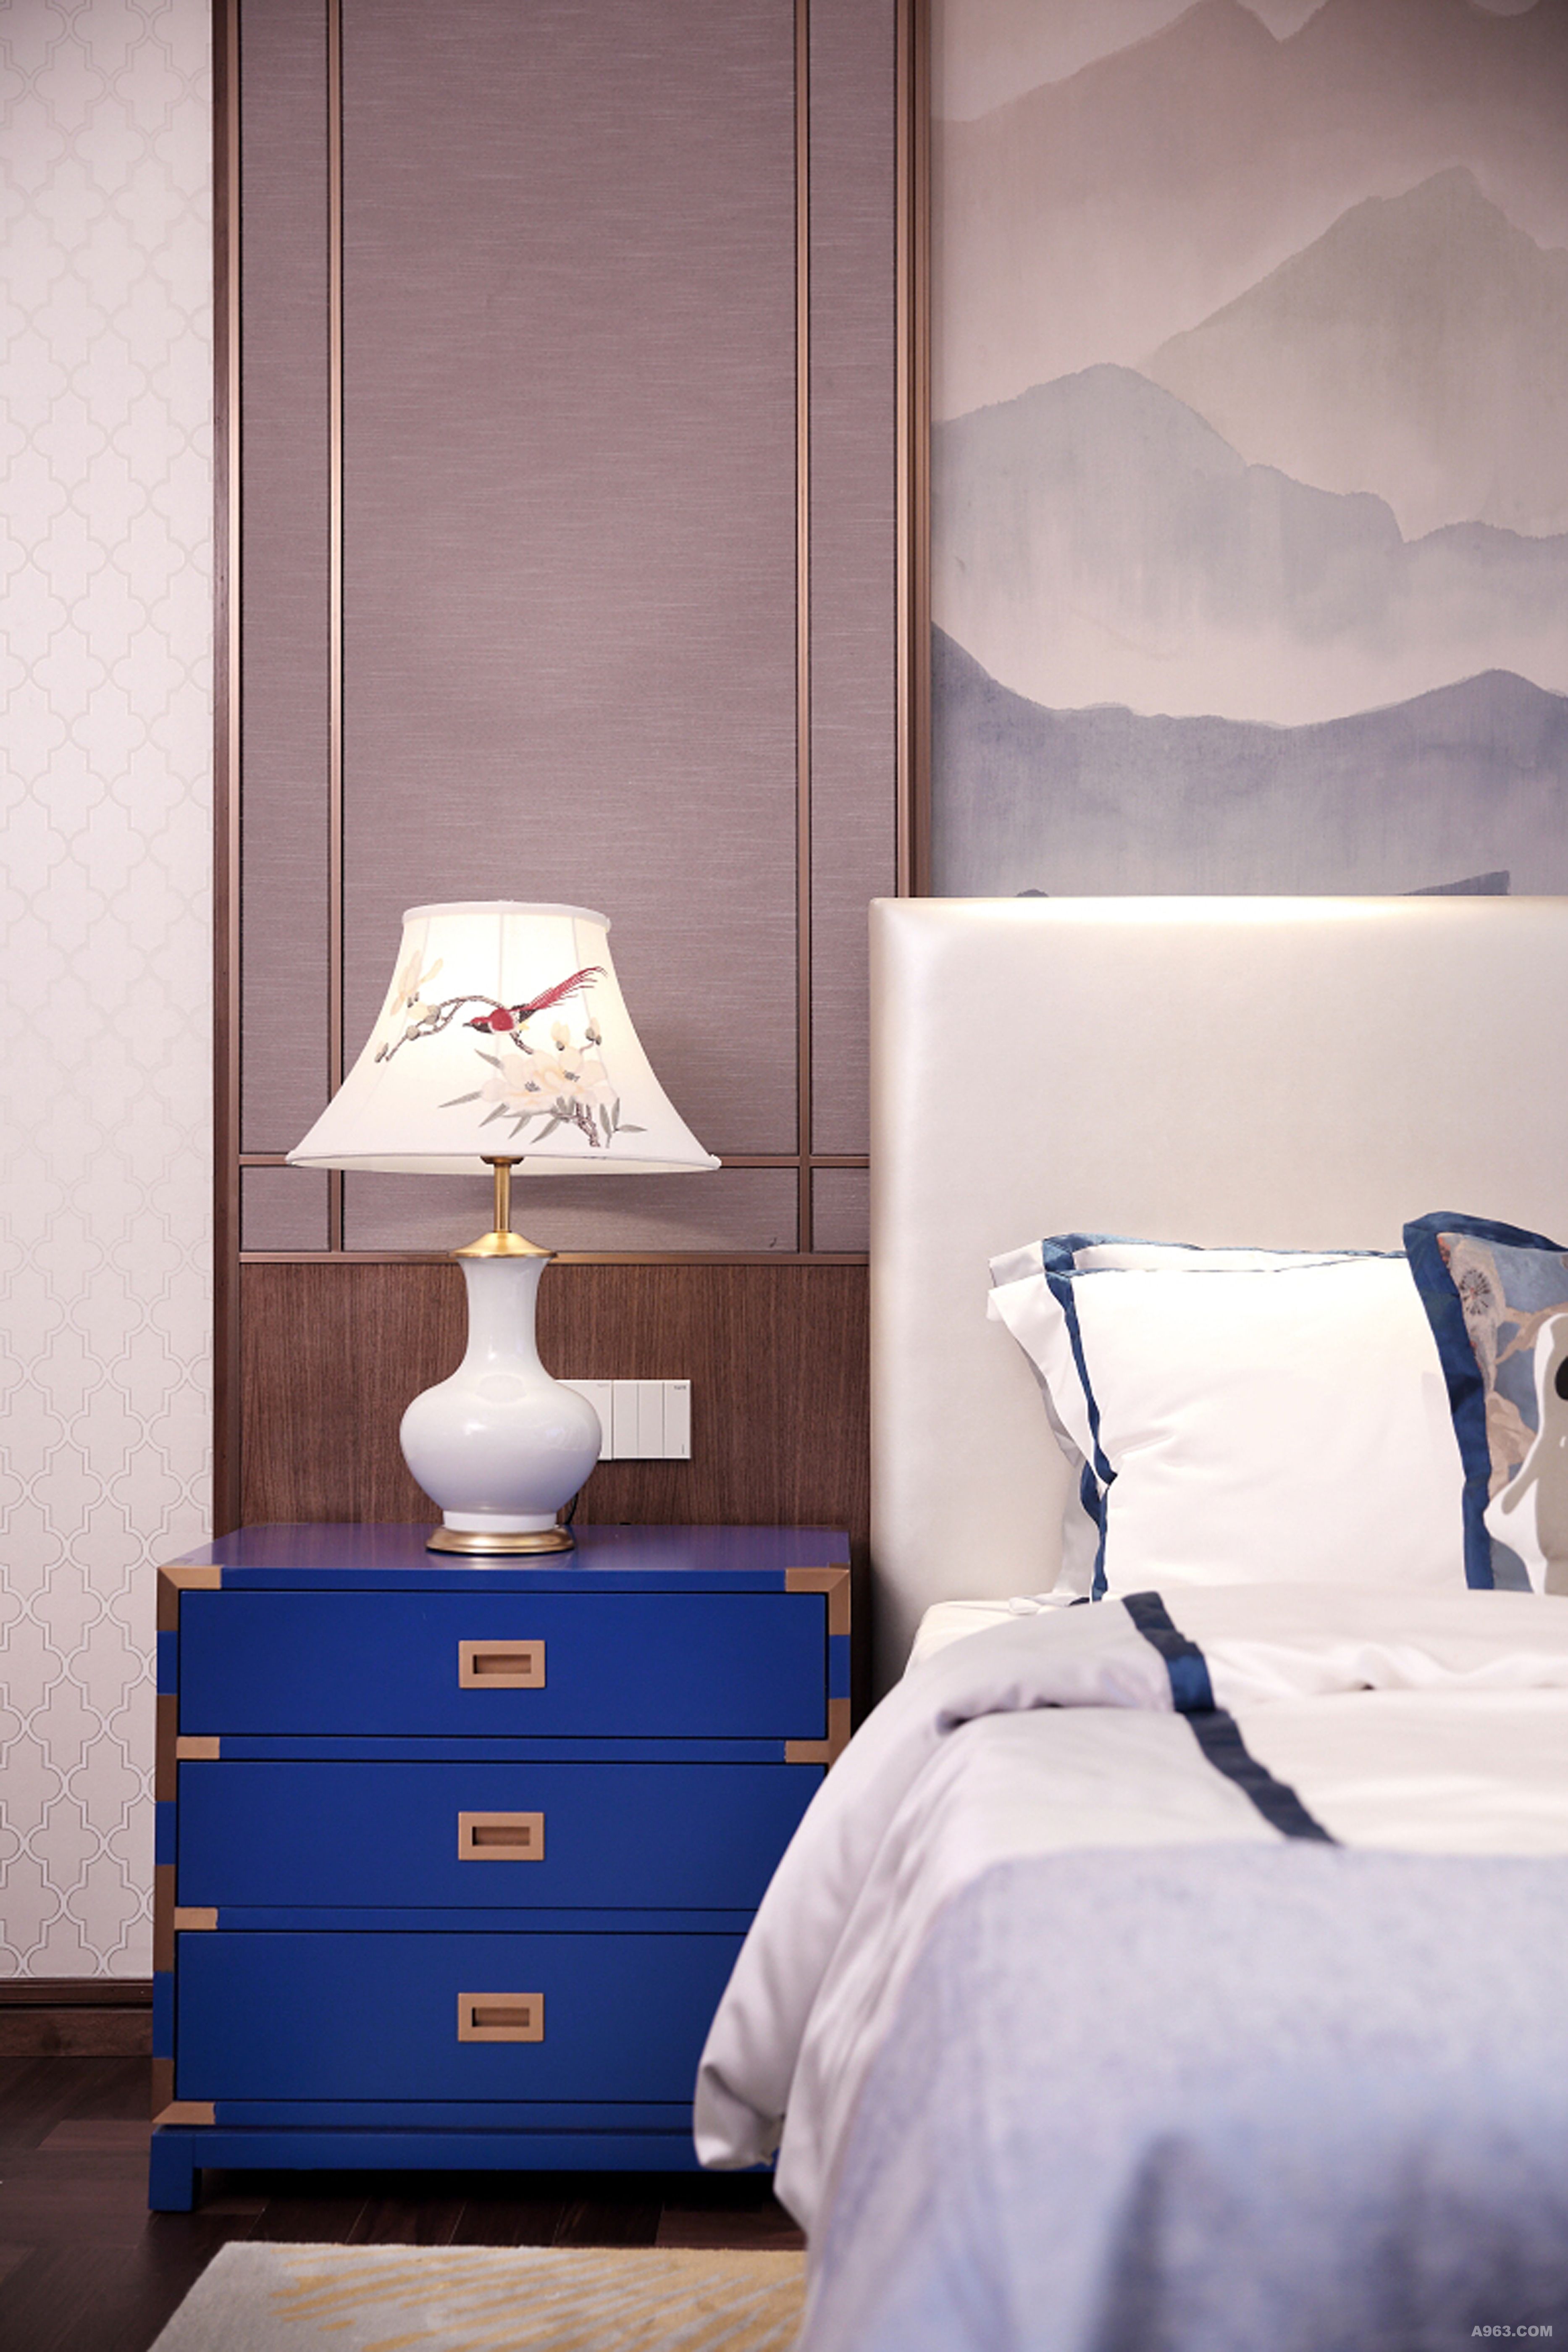 卧室以画为引，以中国传统古典文化作为背景，搭配不同的色调，完美的展现了中式绘画之美，营造的是极富中国浪漫情调的生活空间。